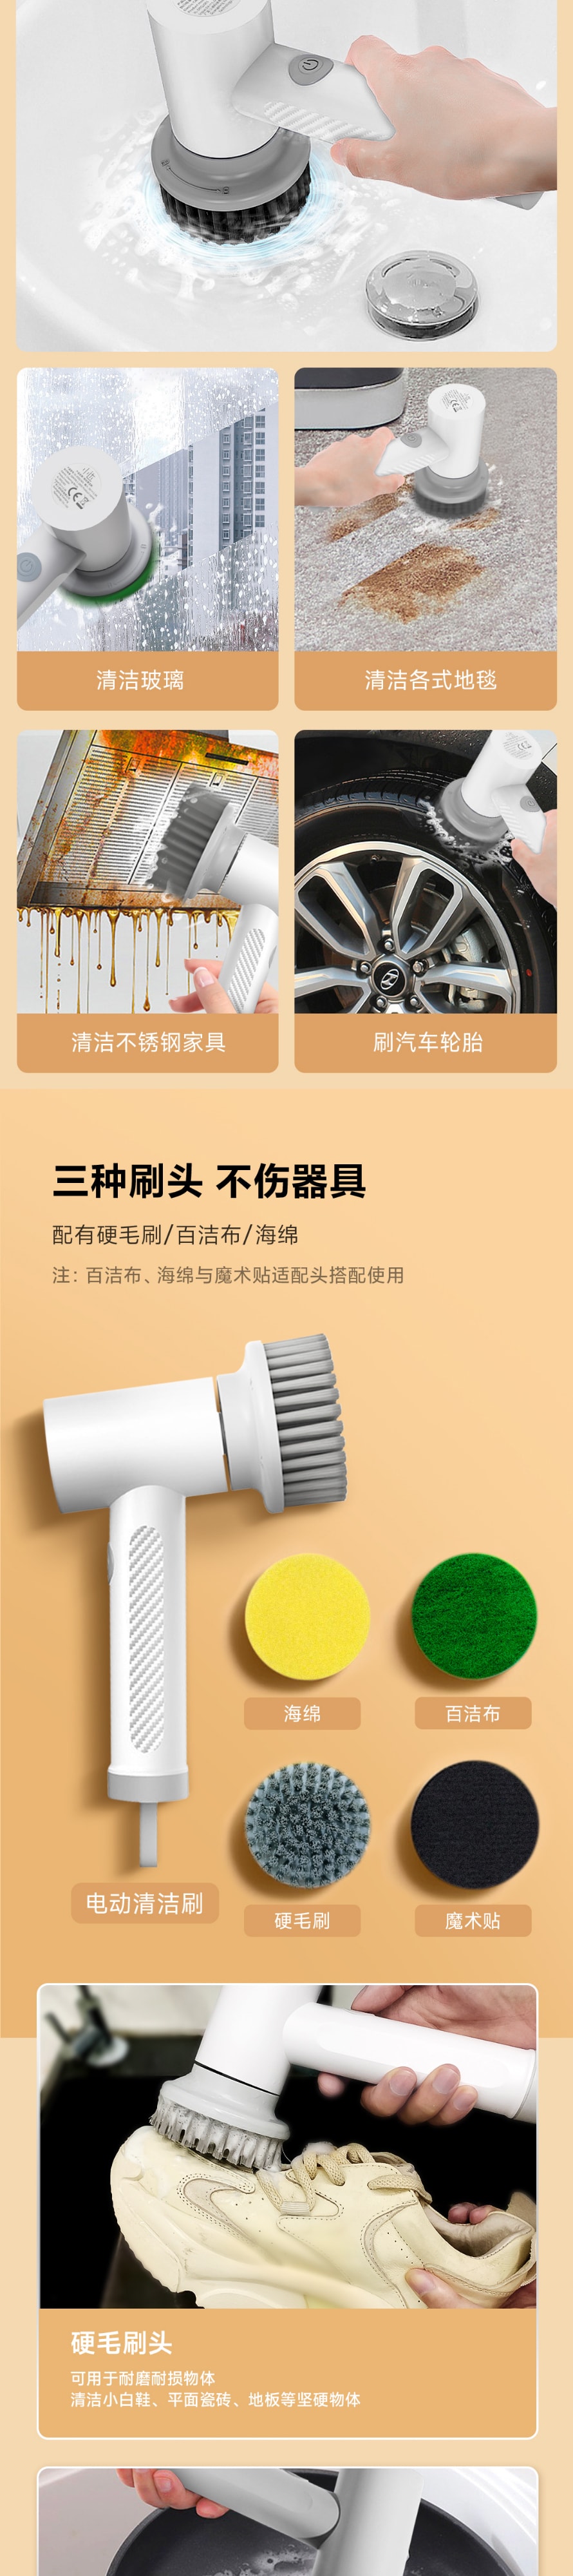 【中国直邮】小米有品 小达智能电动清洁刷 套装 清洁刷+配件